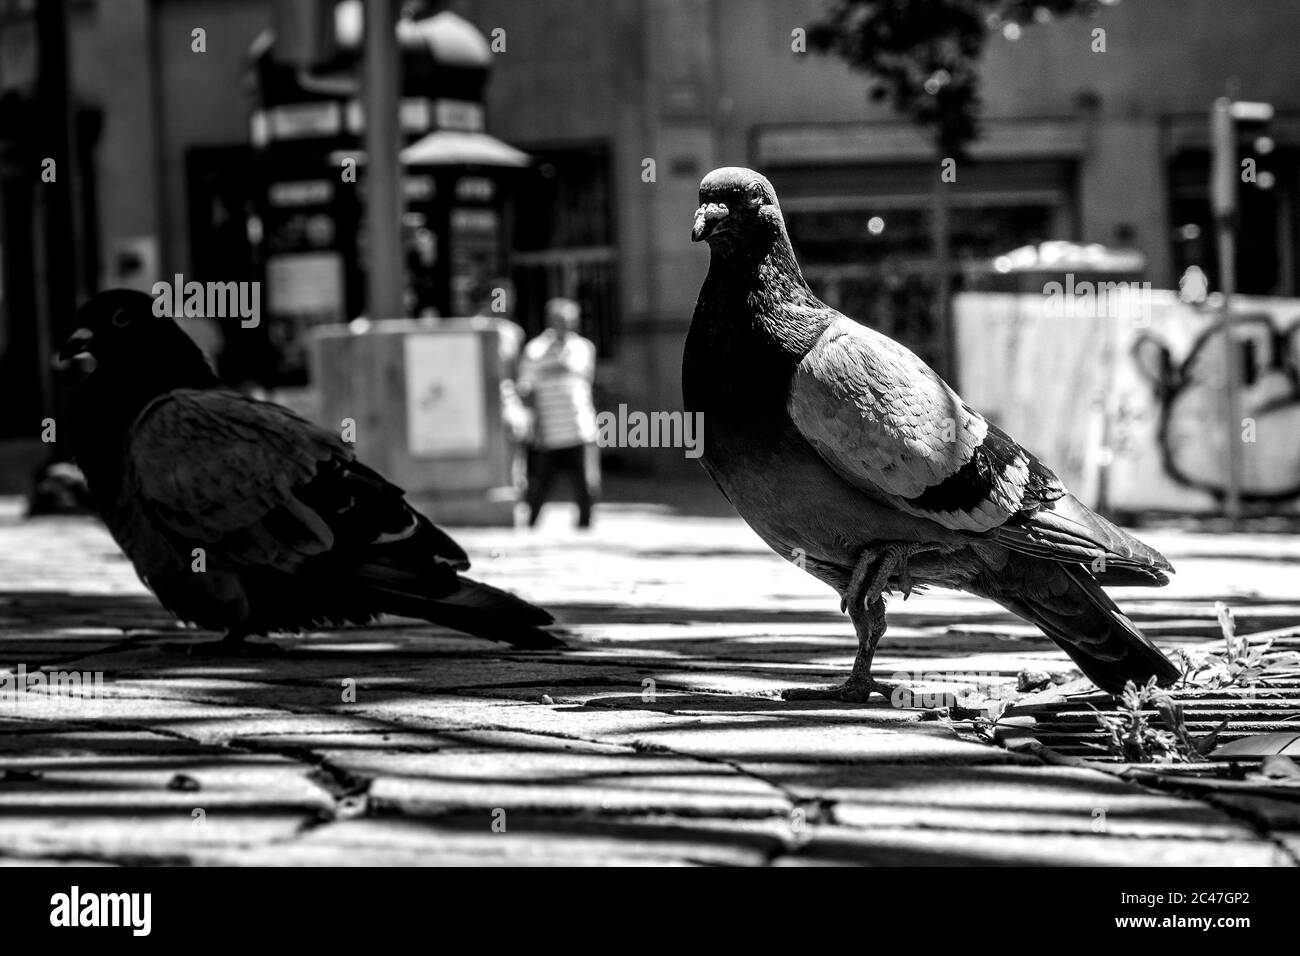 Colpo in scala di grigi delle colombe di stock sulla strada durante il giorno Foto Stock